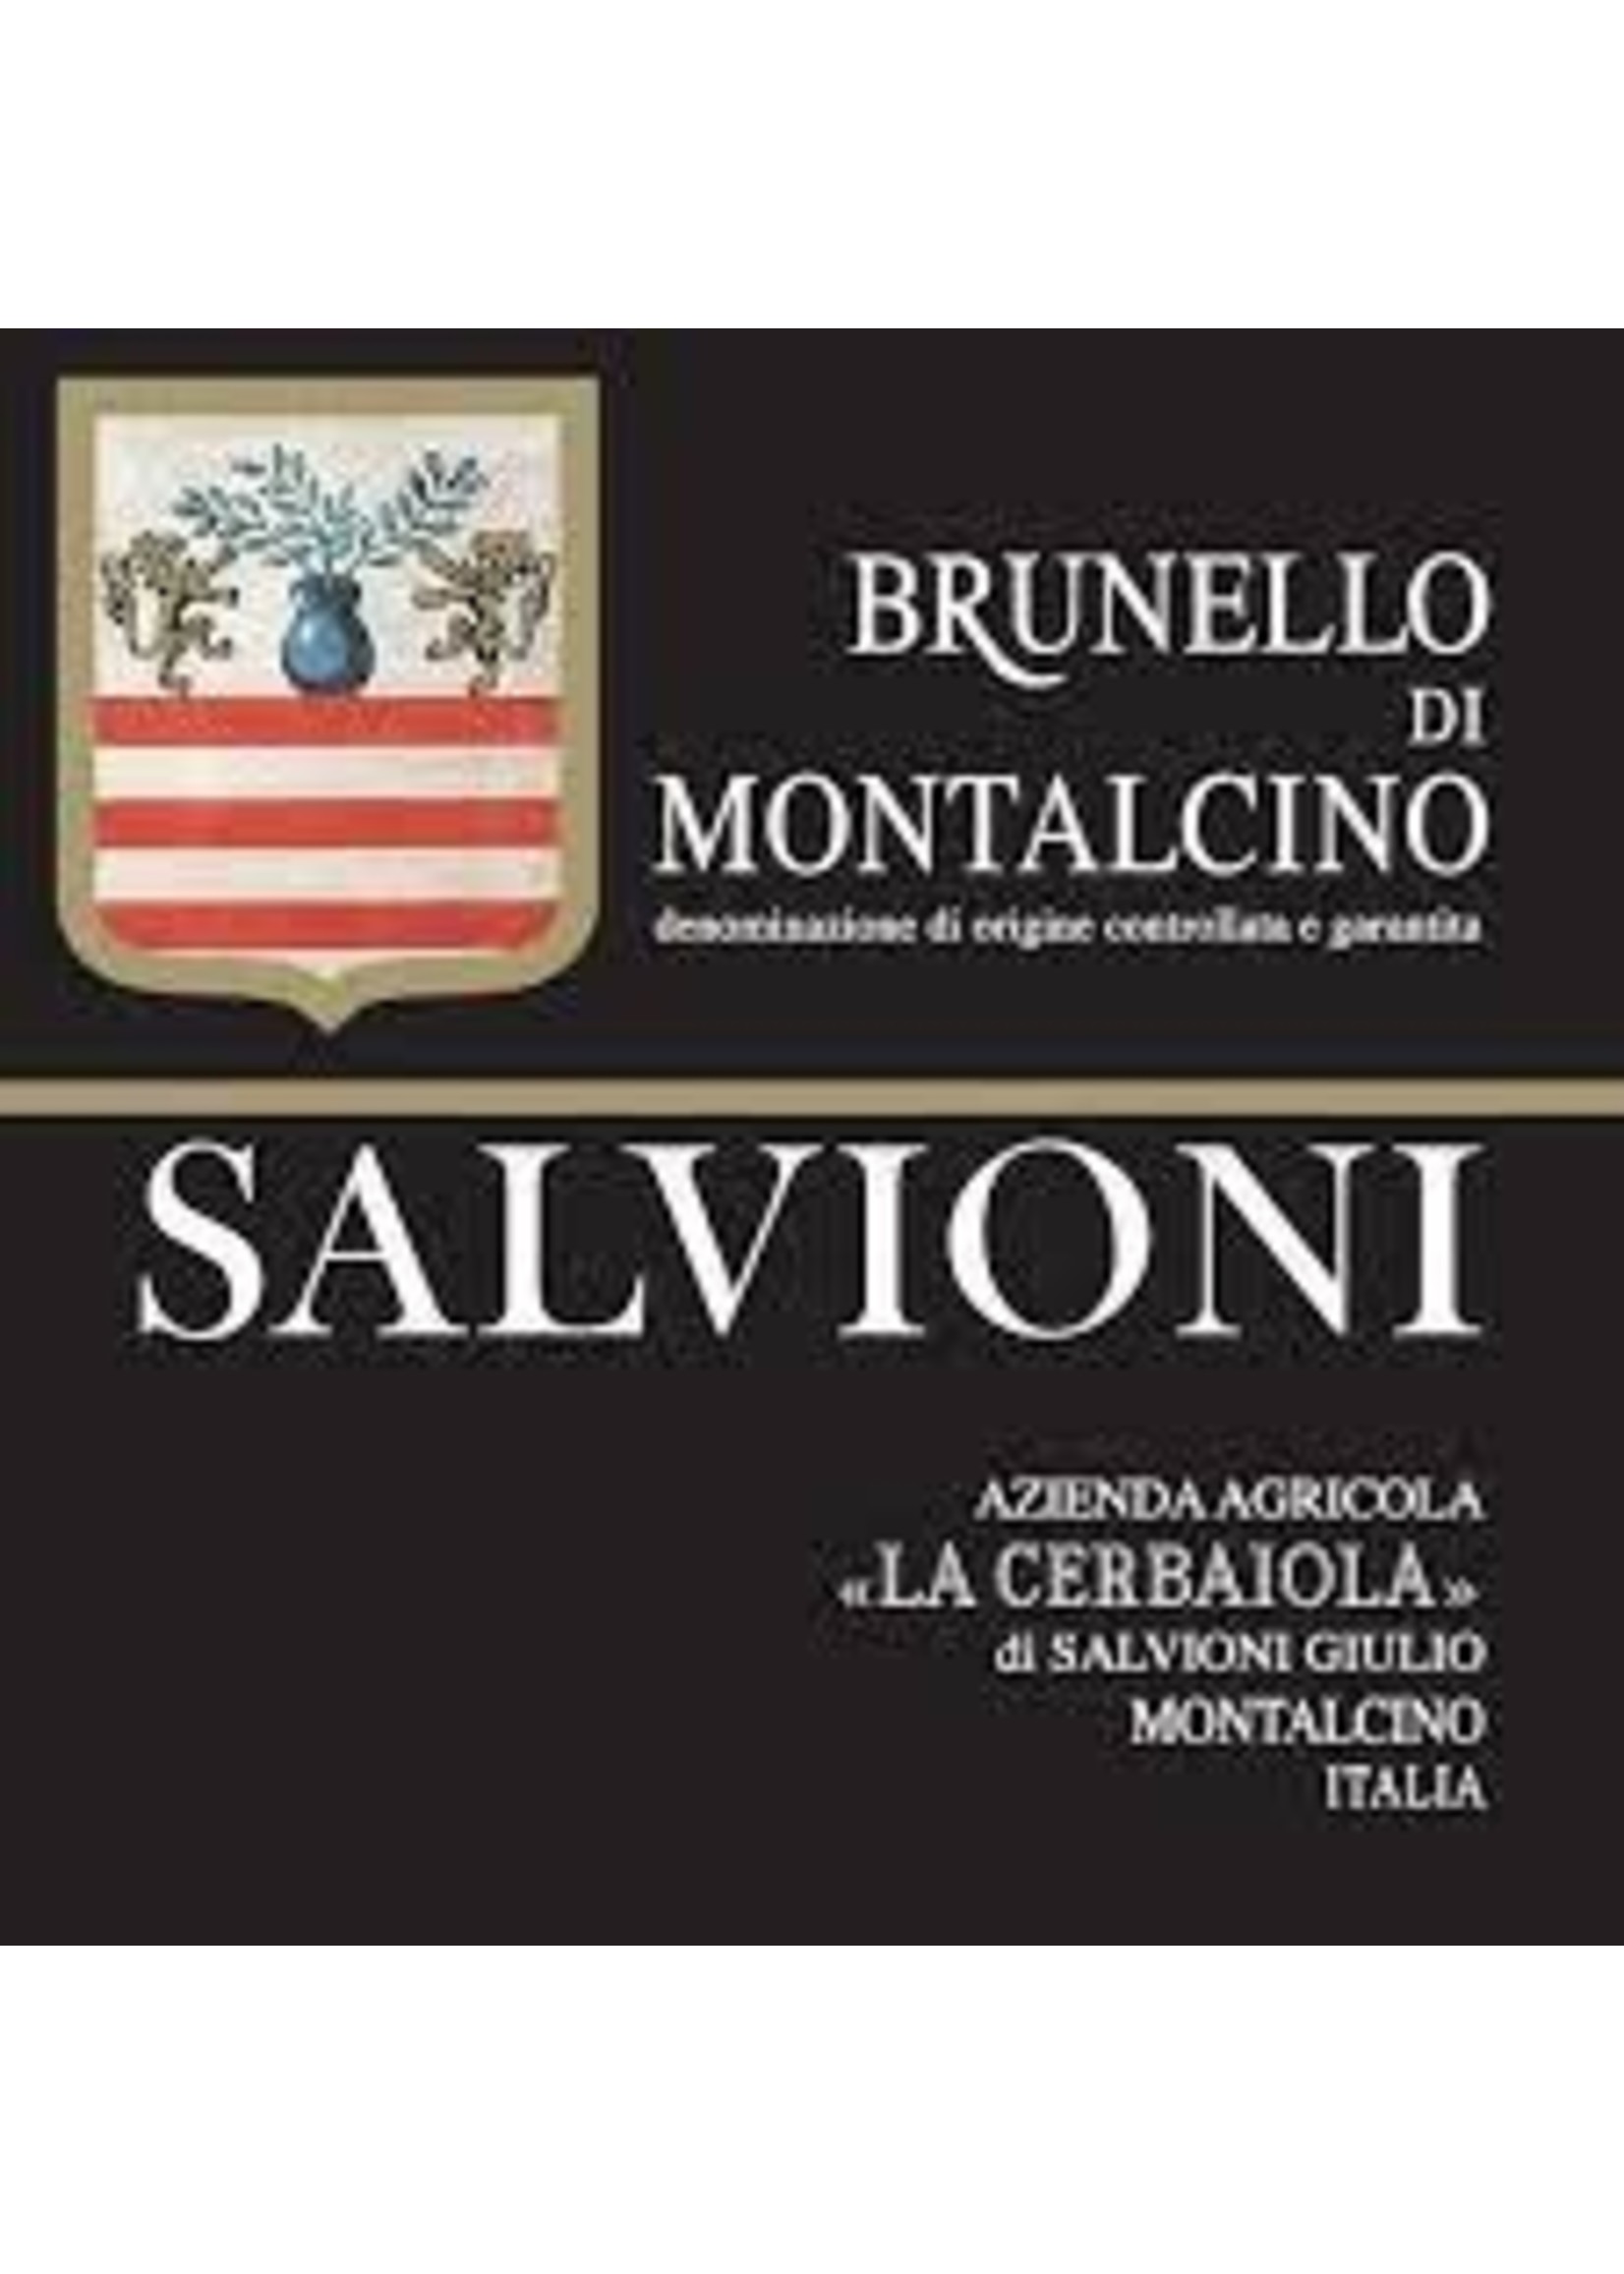 Salvioni (La Cerbaiola) 2017 Brunello di Montalcino 750ml